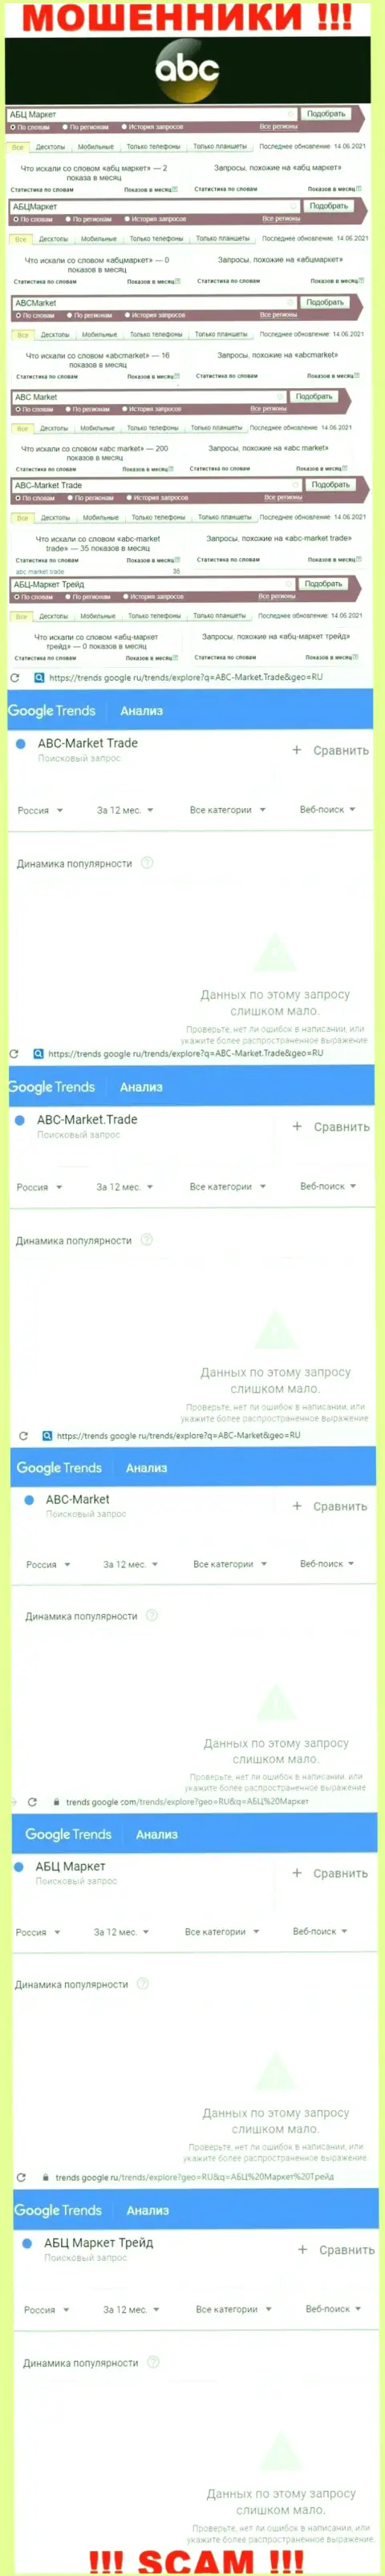 Статистические данные количества онлайн запросов в инете по махинаторам ABC-Market Trade